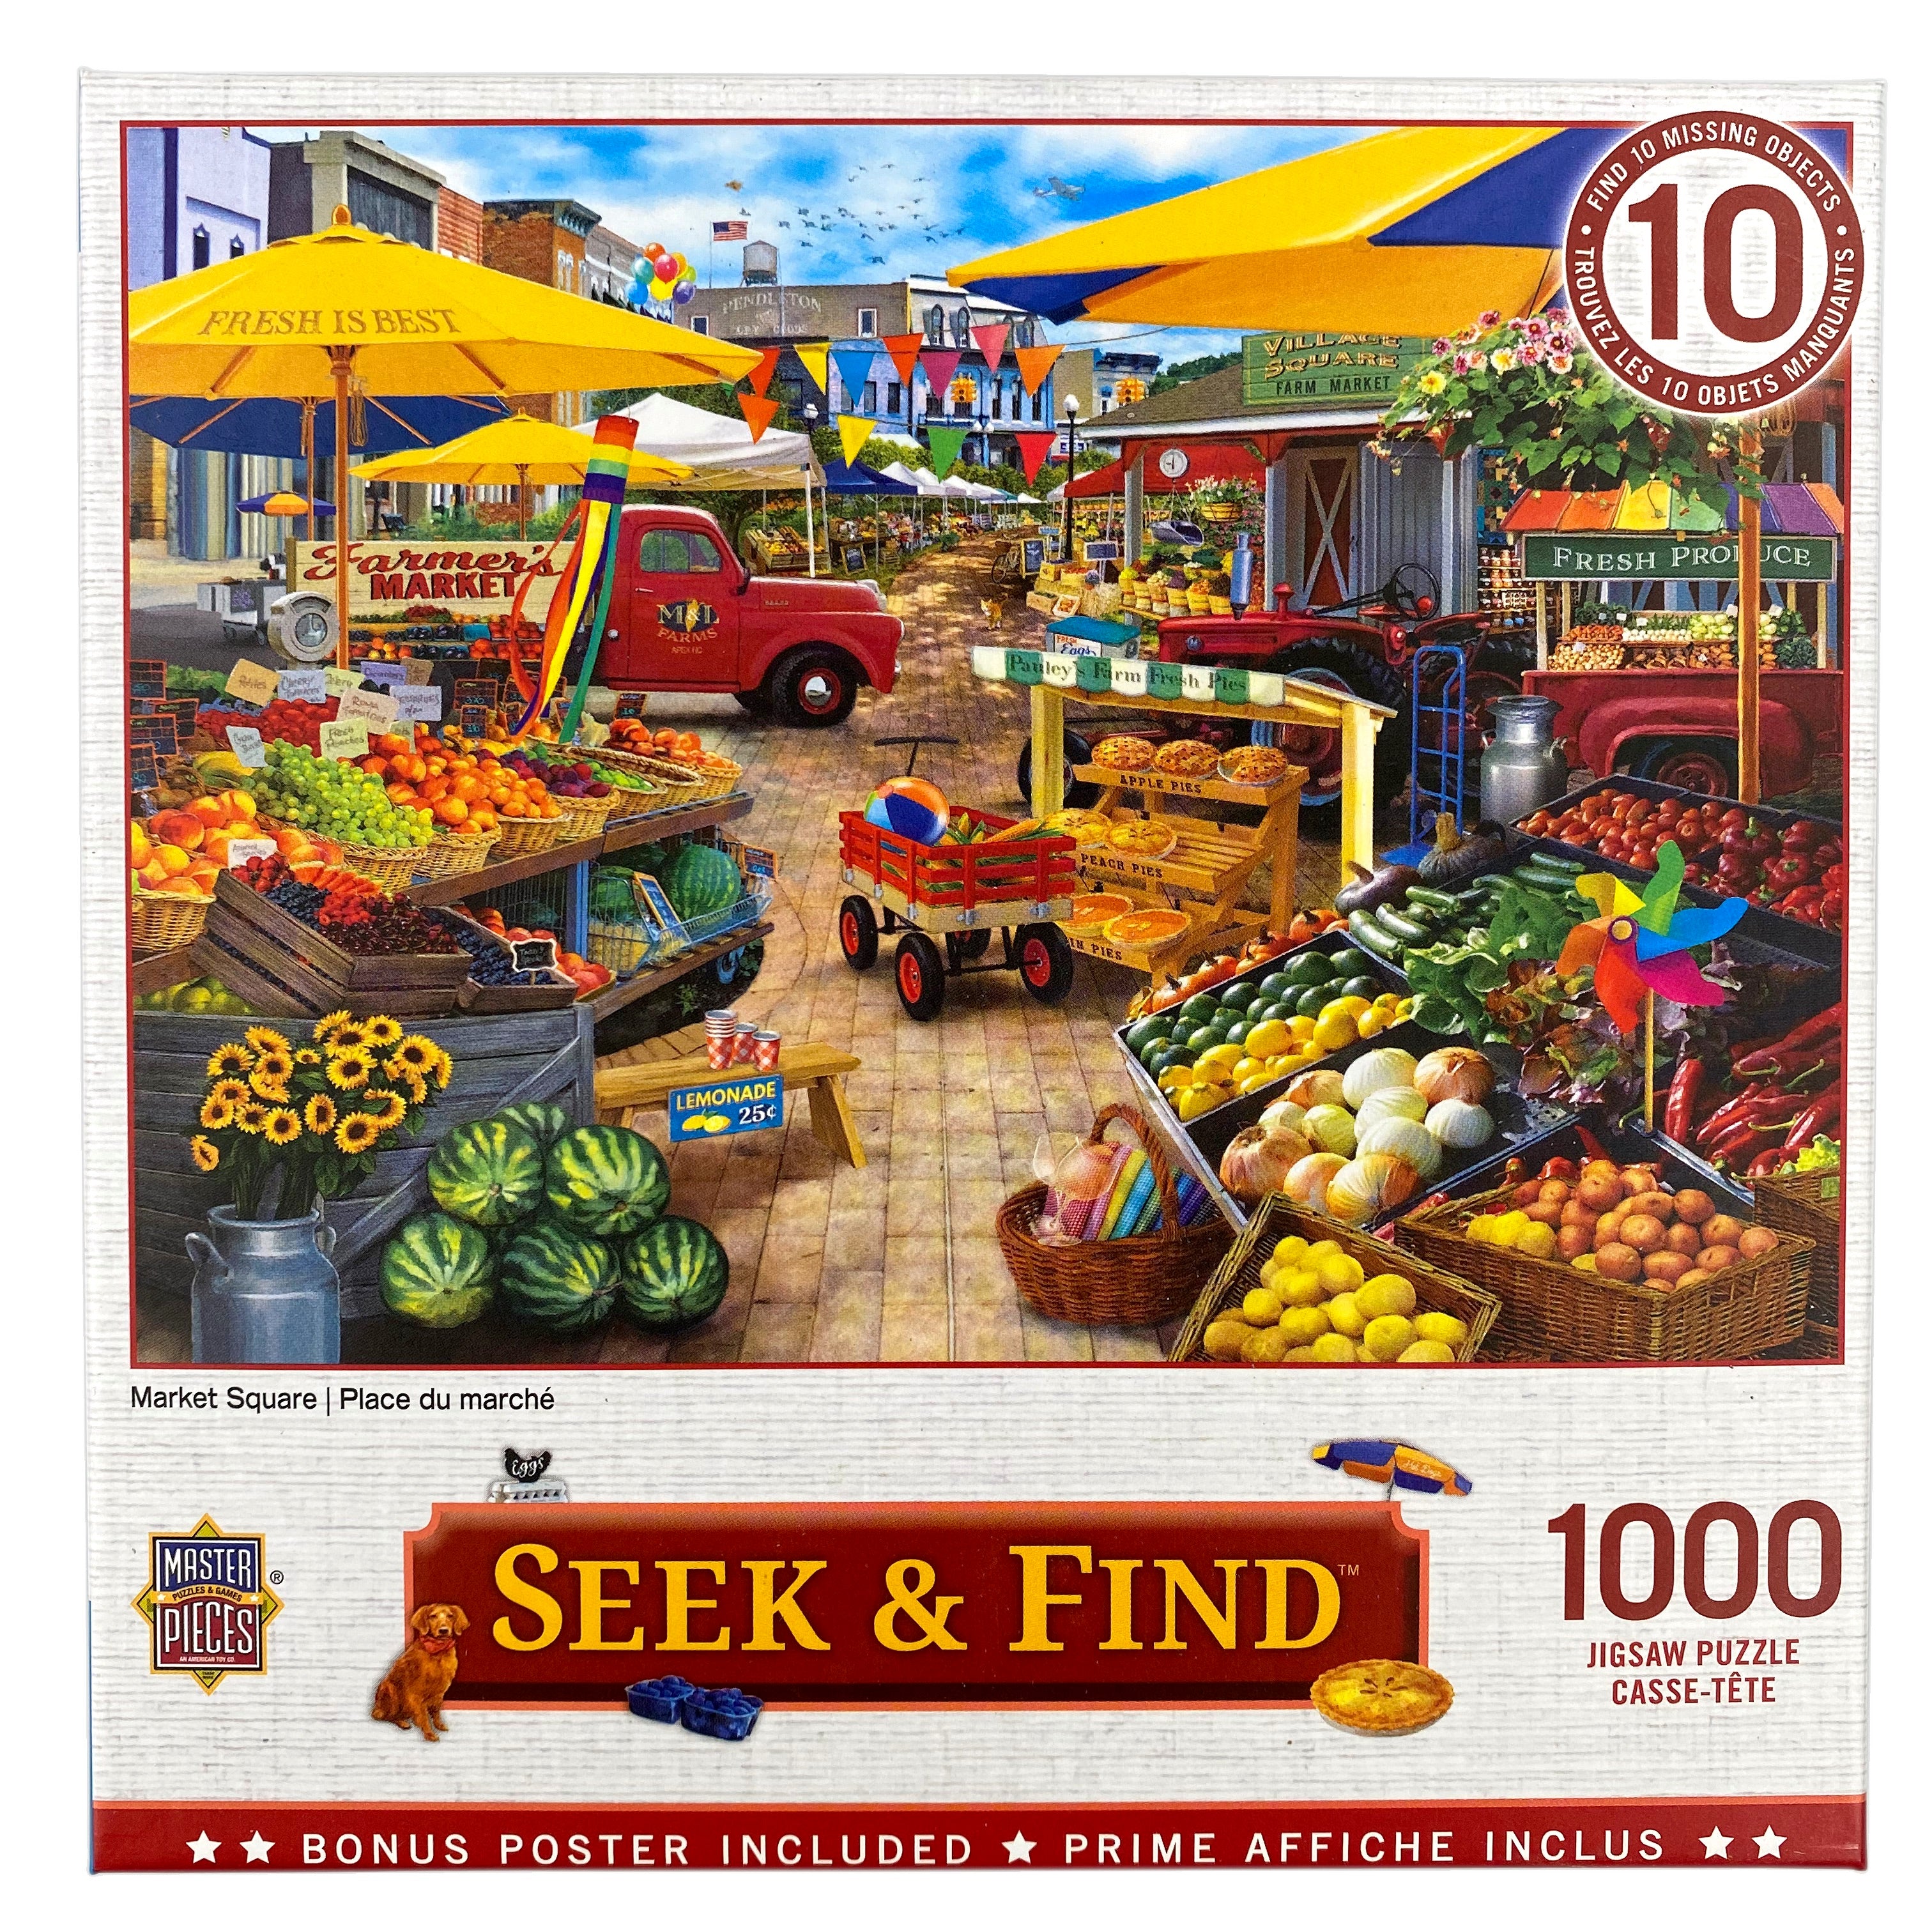 Market Square 1000 Piece Seek & Find Puzzle    